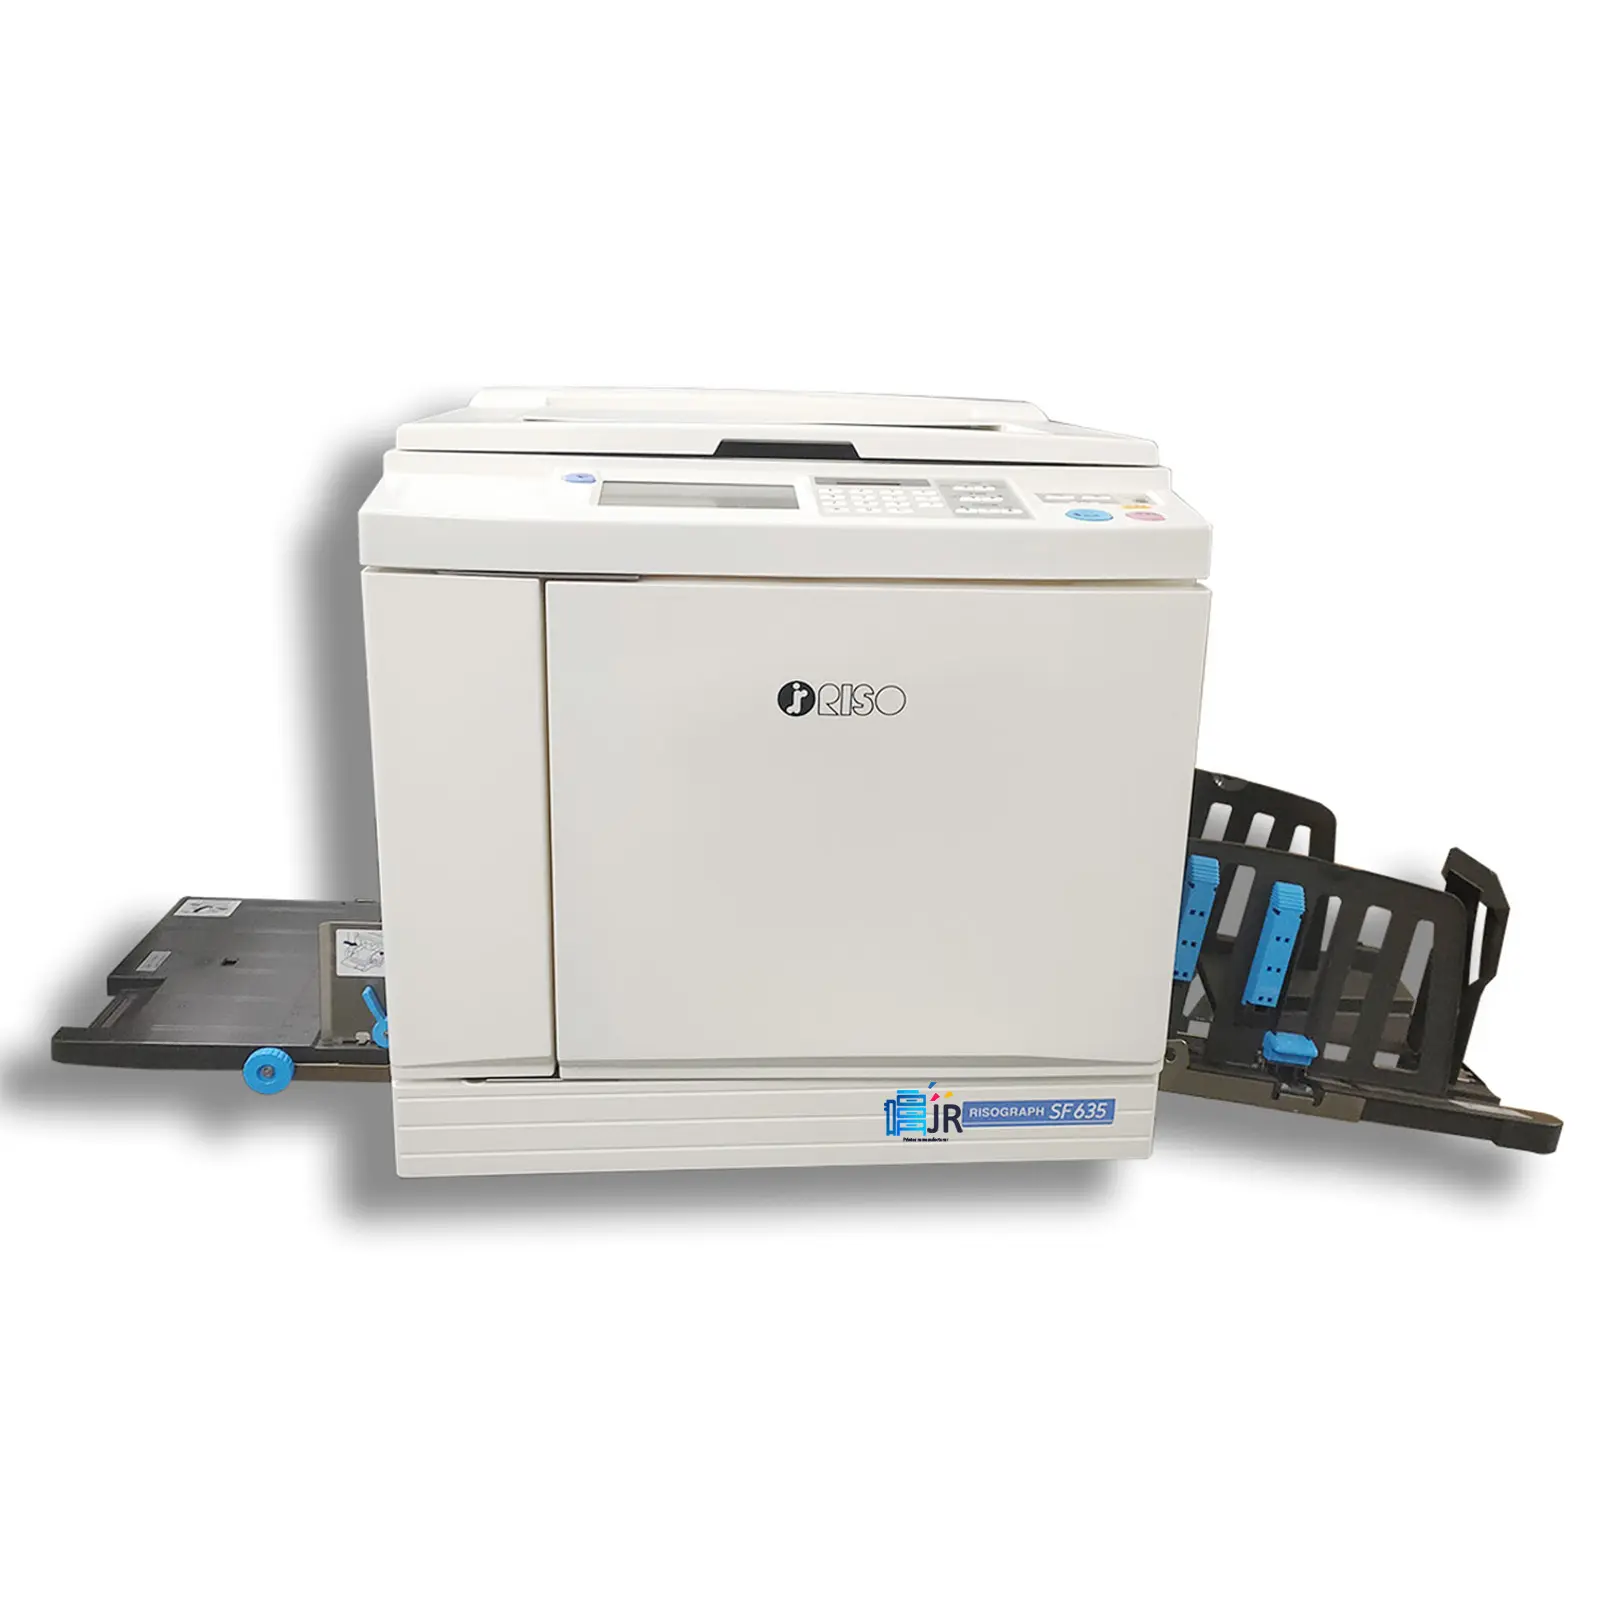 Riso SF635 Kopiermaschine überholter Digital-Duplikator Druckmaschine 5s A3 Farb-Scan-Maschine Drucker allgemein farbiger Kopierer